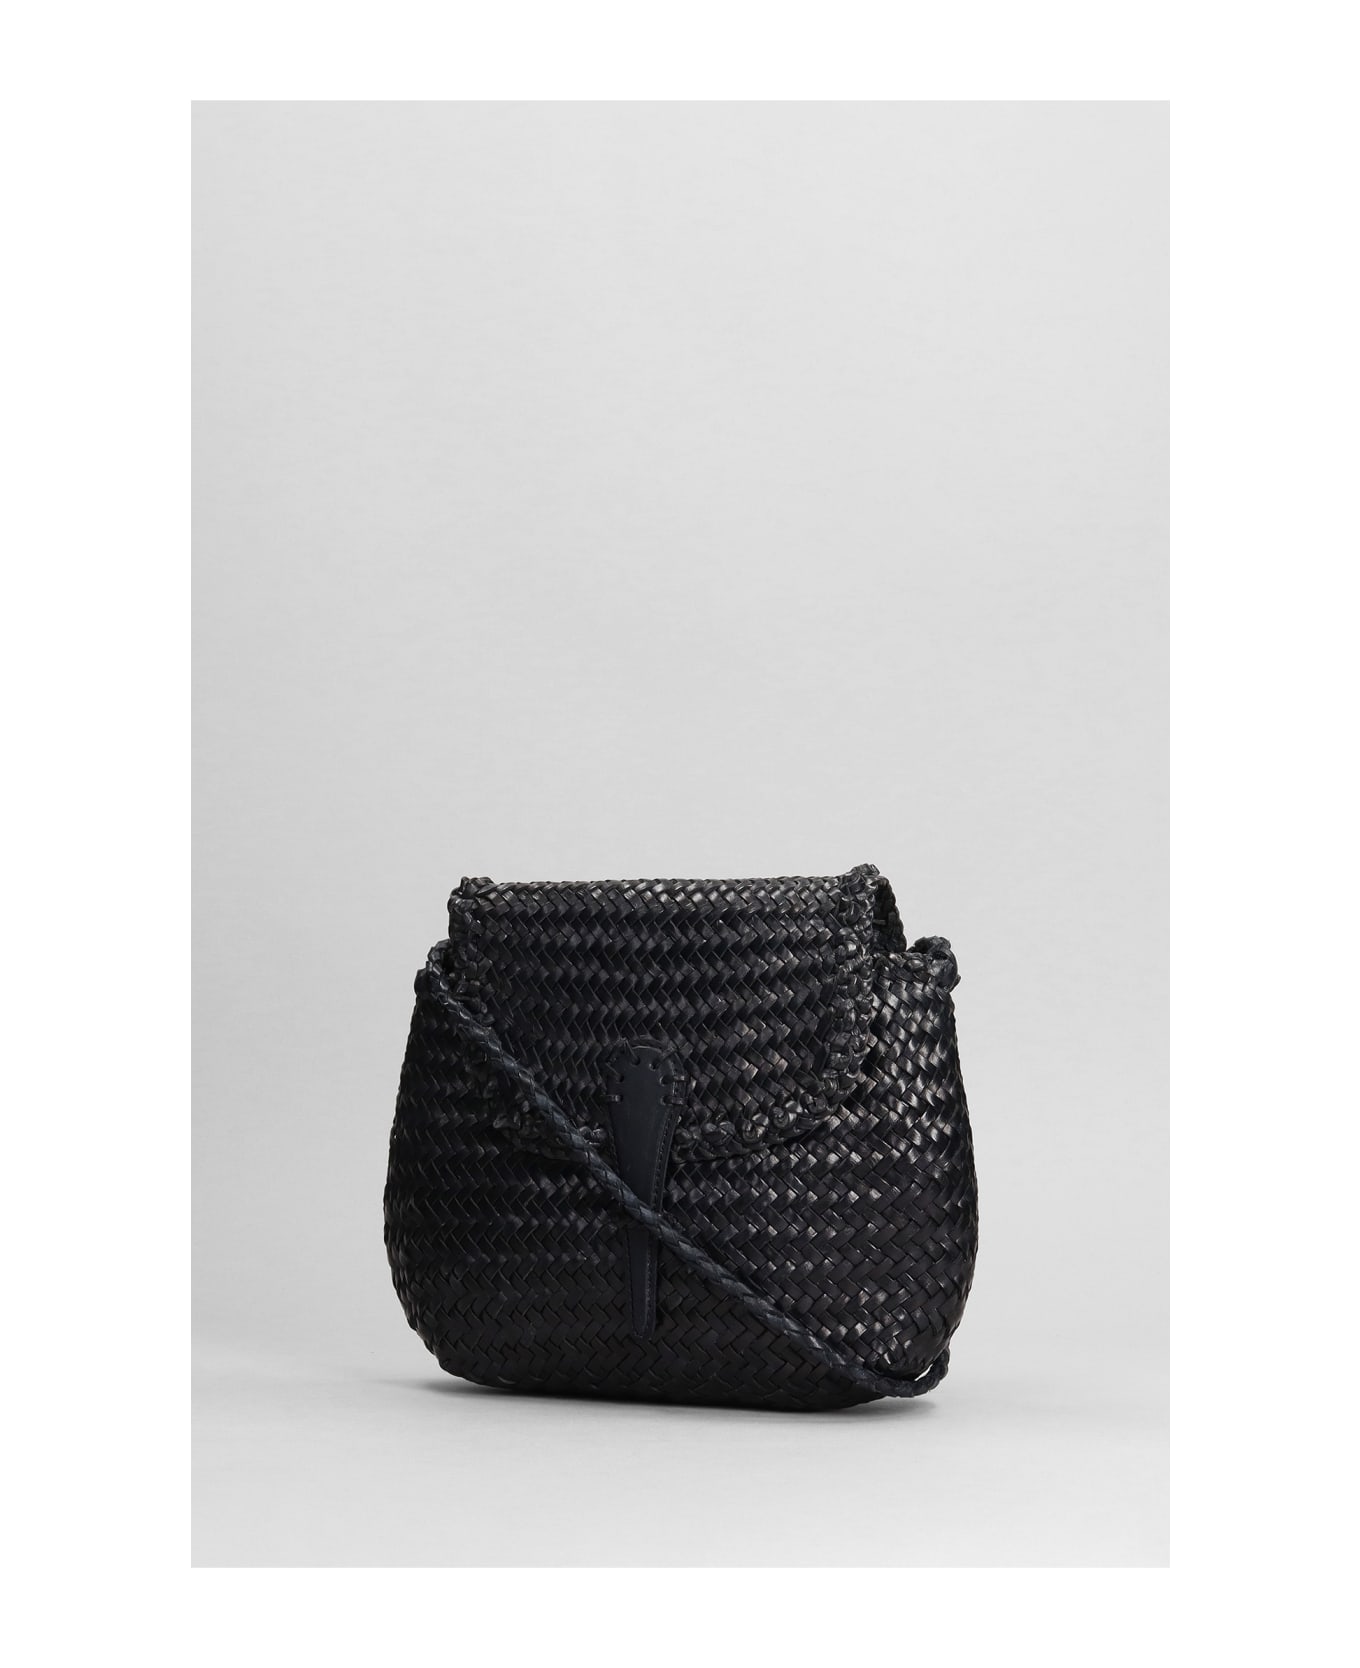 Dragon Diffusion Mini City Shoulder Bag In Black Leather - black